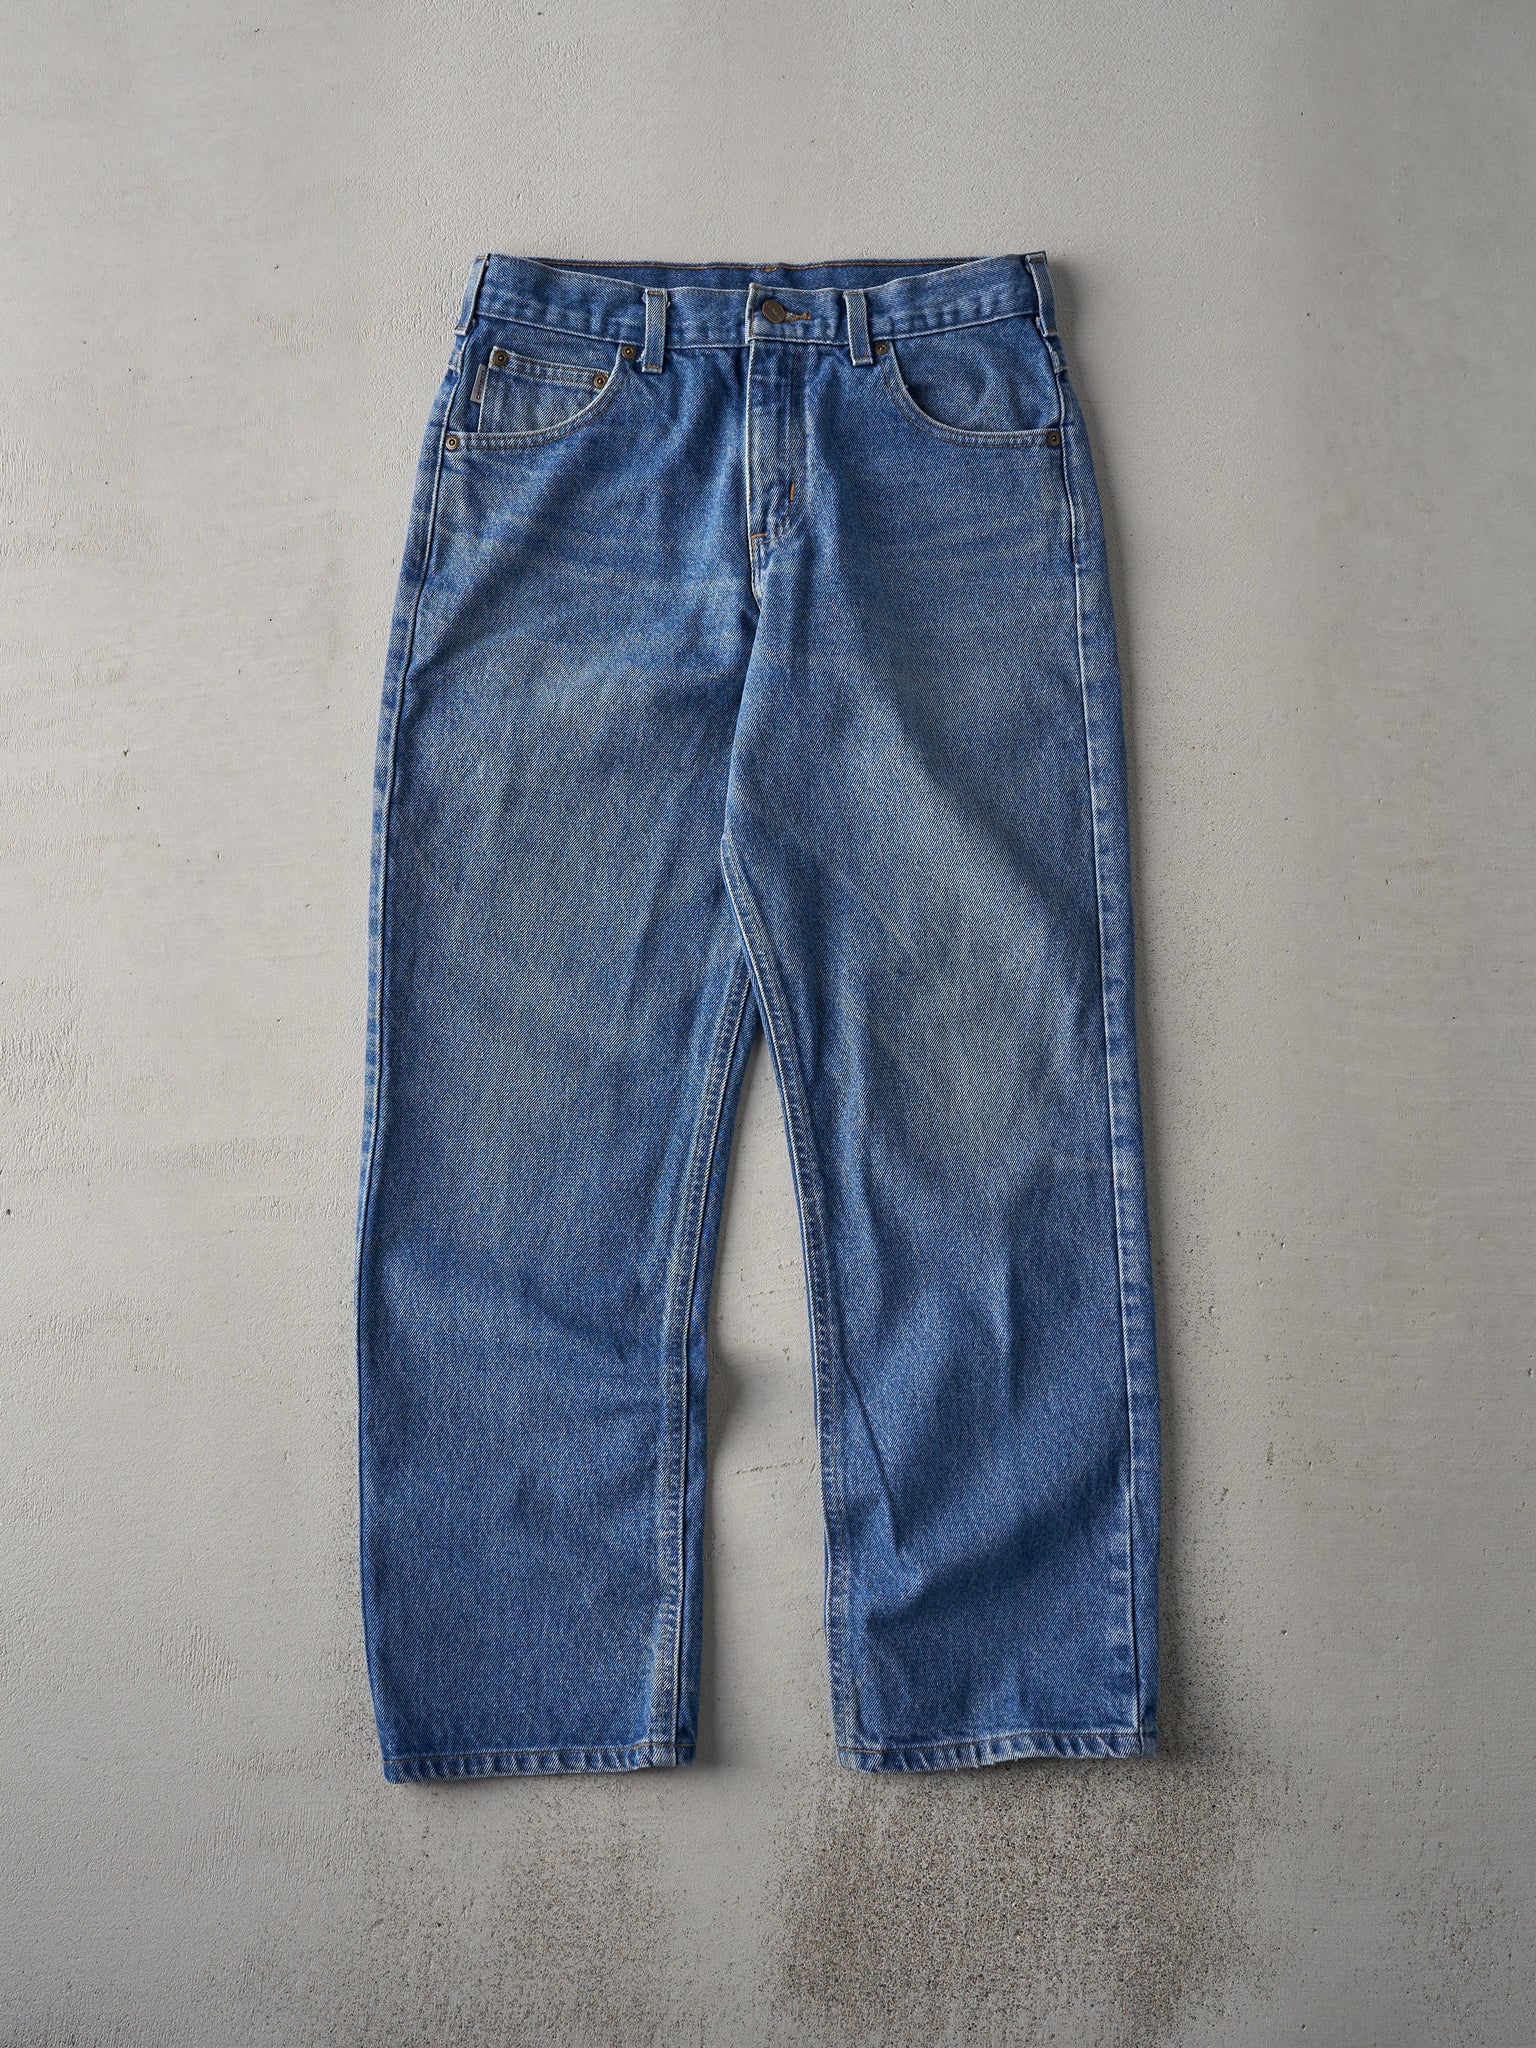 Vintage 90s Dark Wash Carhartt Jeans (31x29.5)